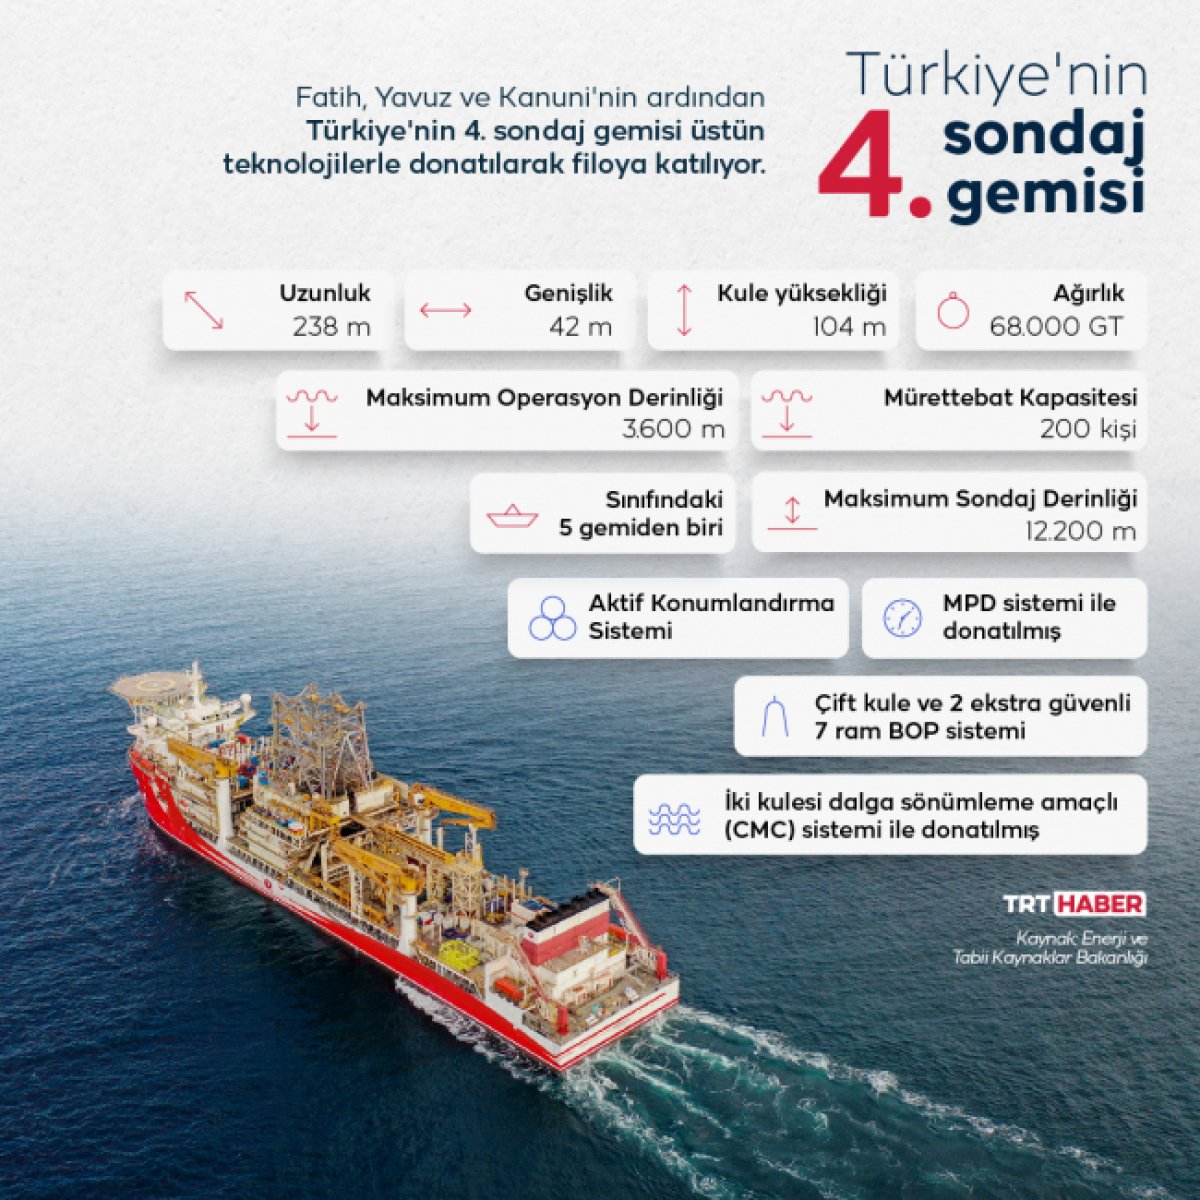 Dördüncü sondaj gemisi Alparslan Türkiye de #1